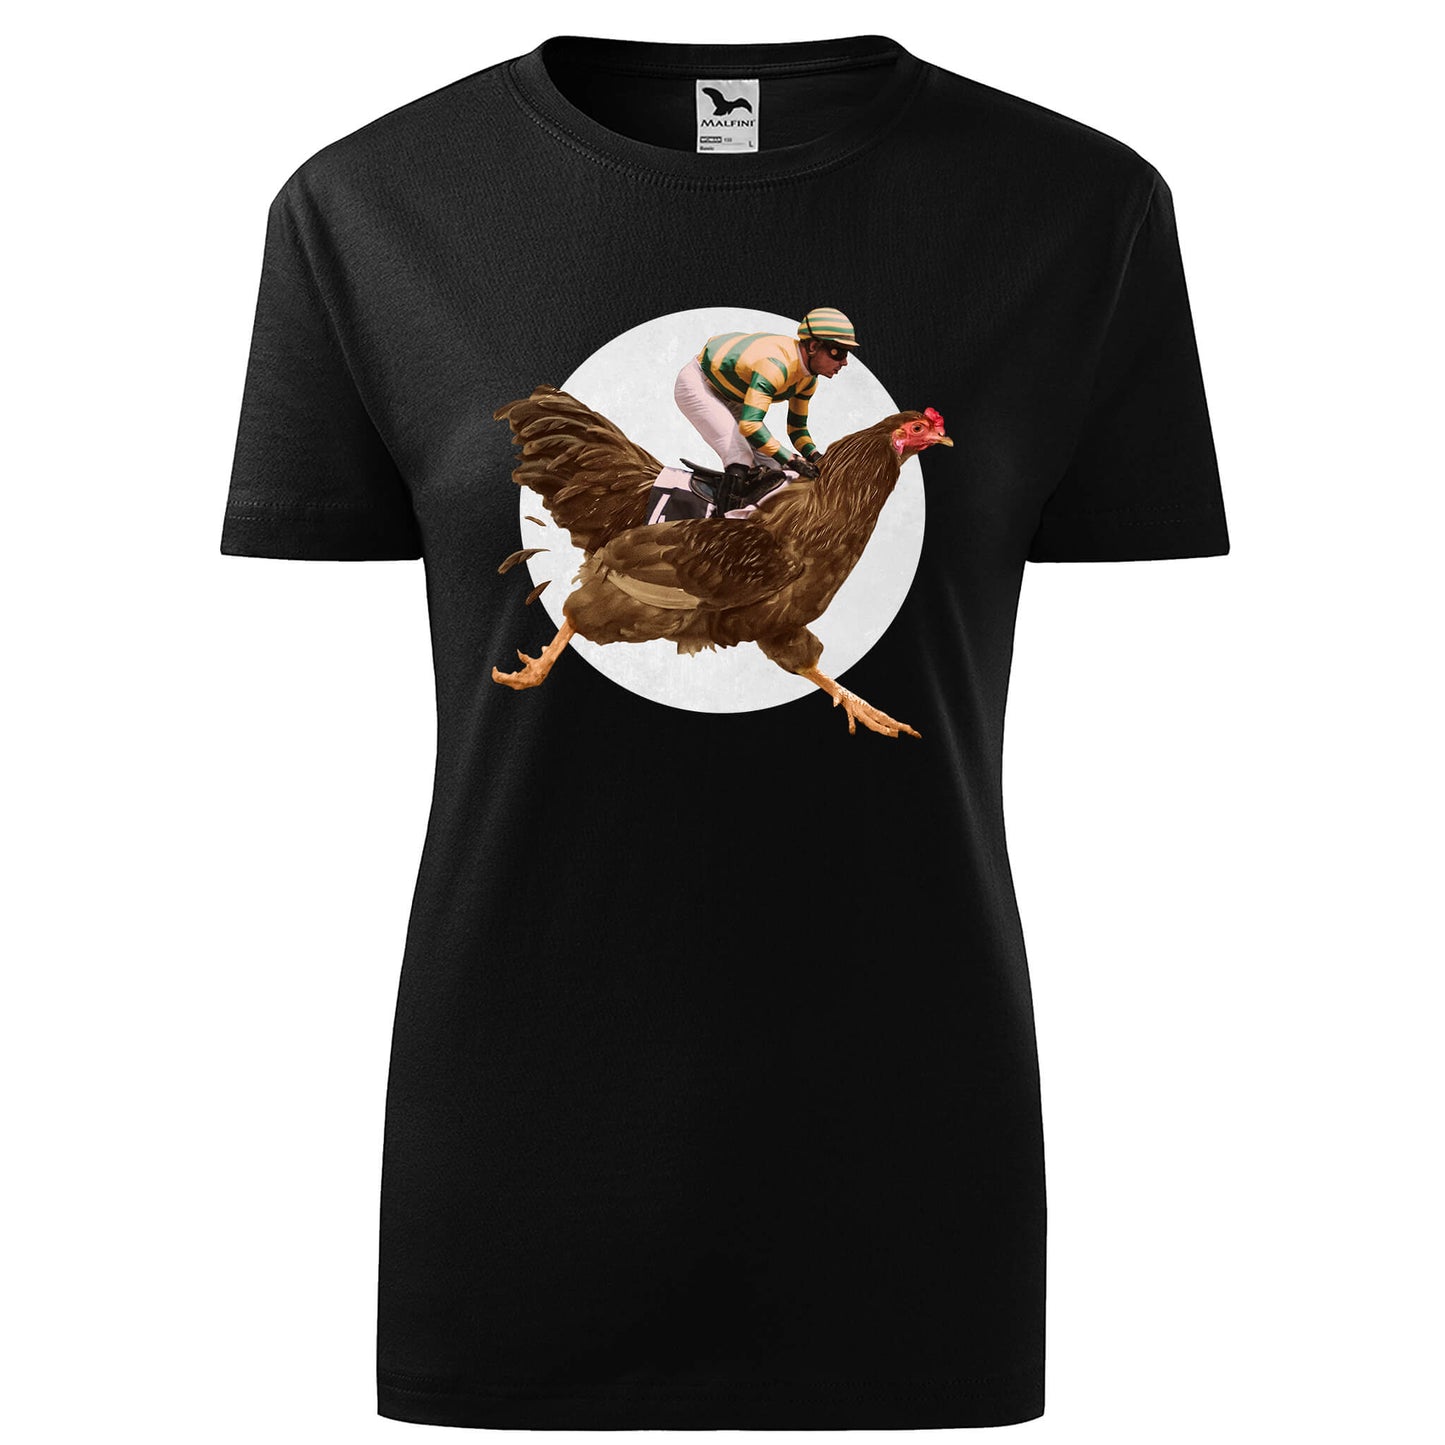 Man riding a chicken t-shirt - rvdesignprint